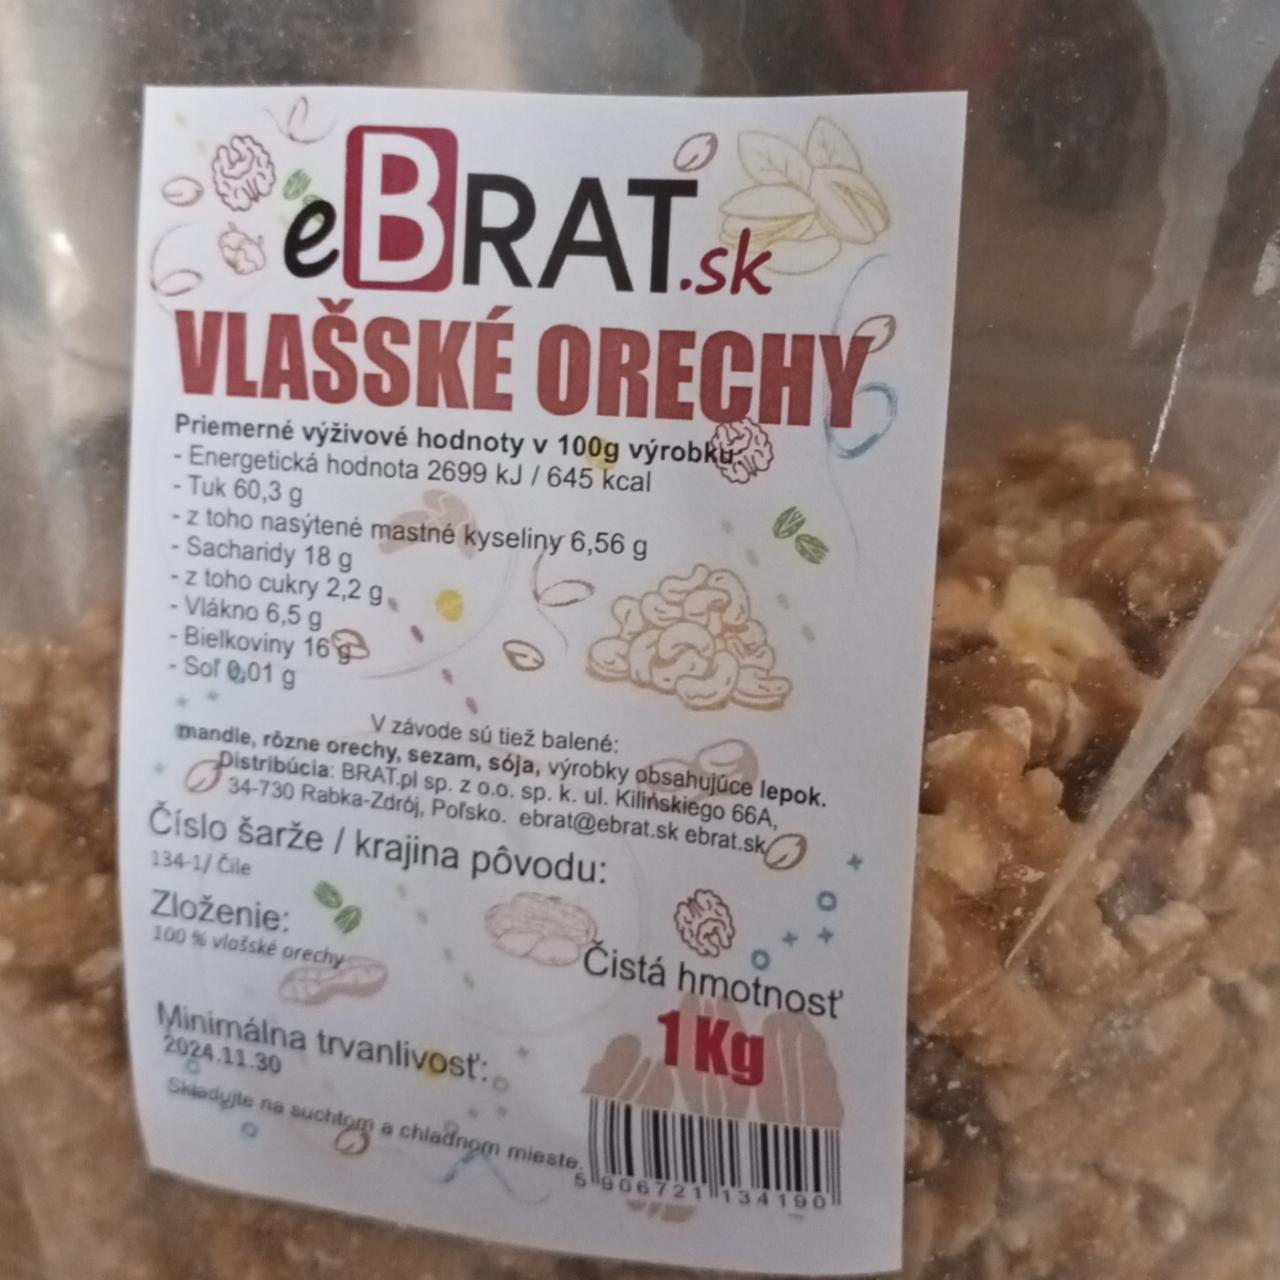 Fotografie - Vlašské orechy eBrat.sk